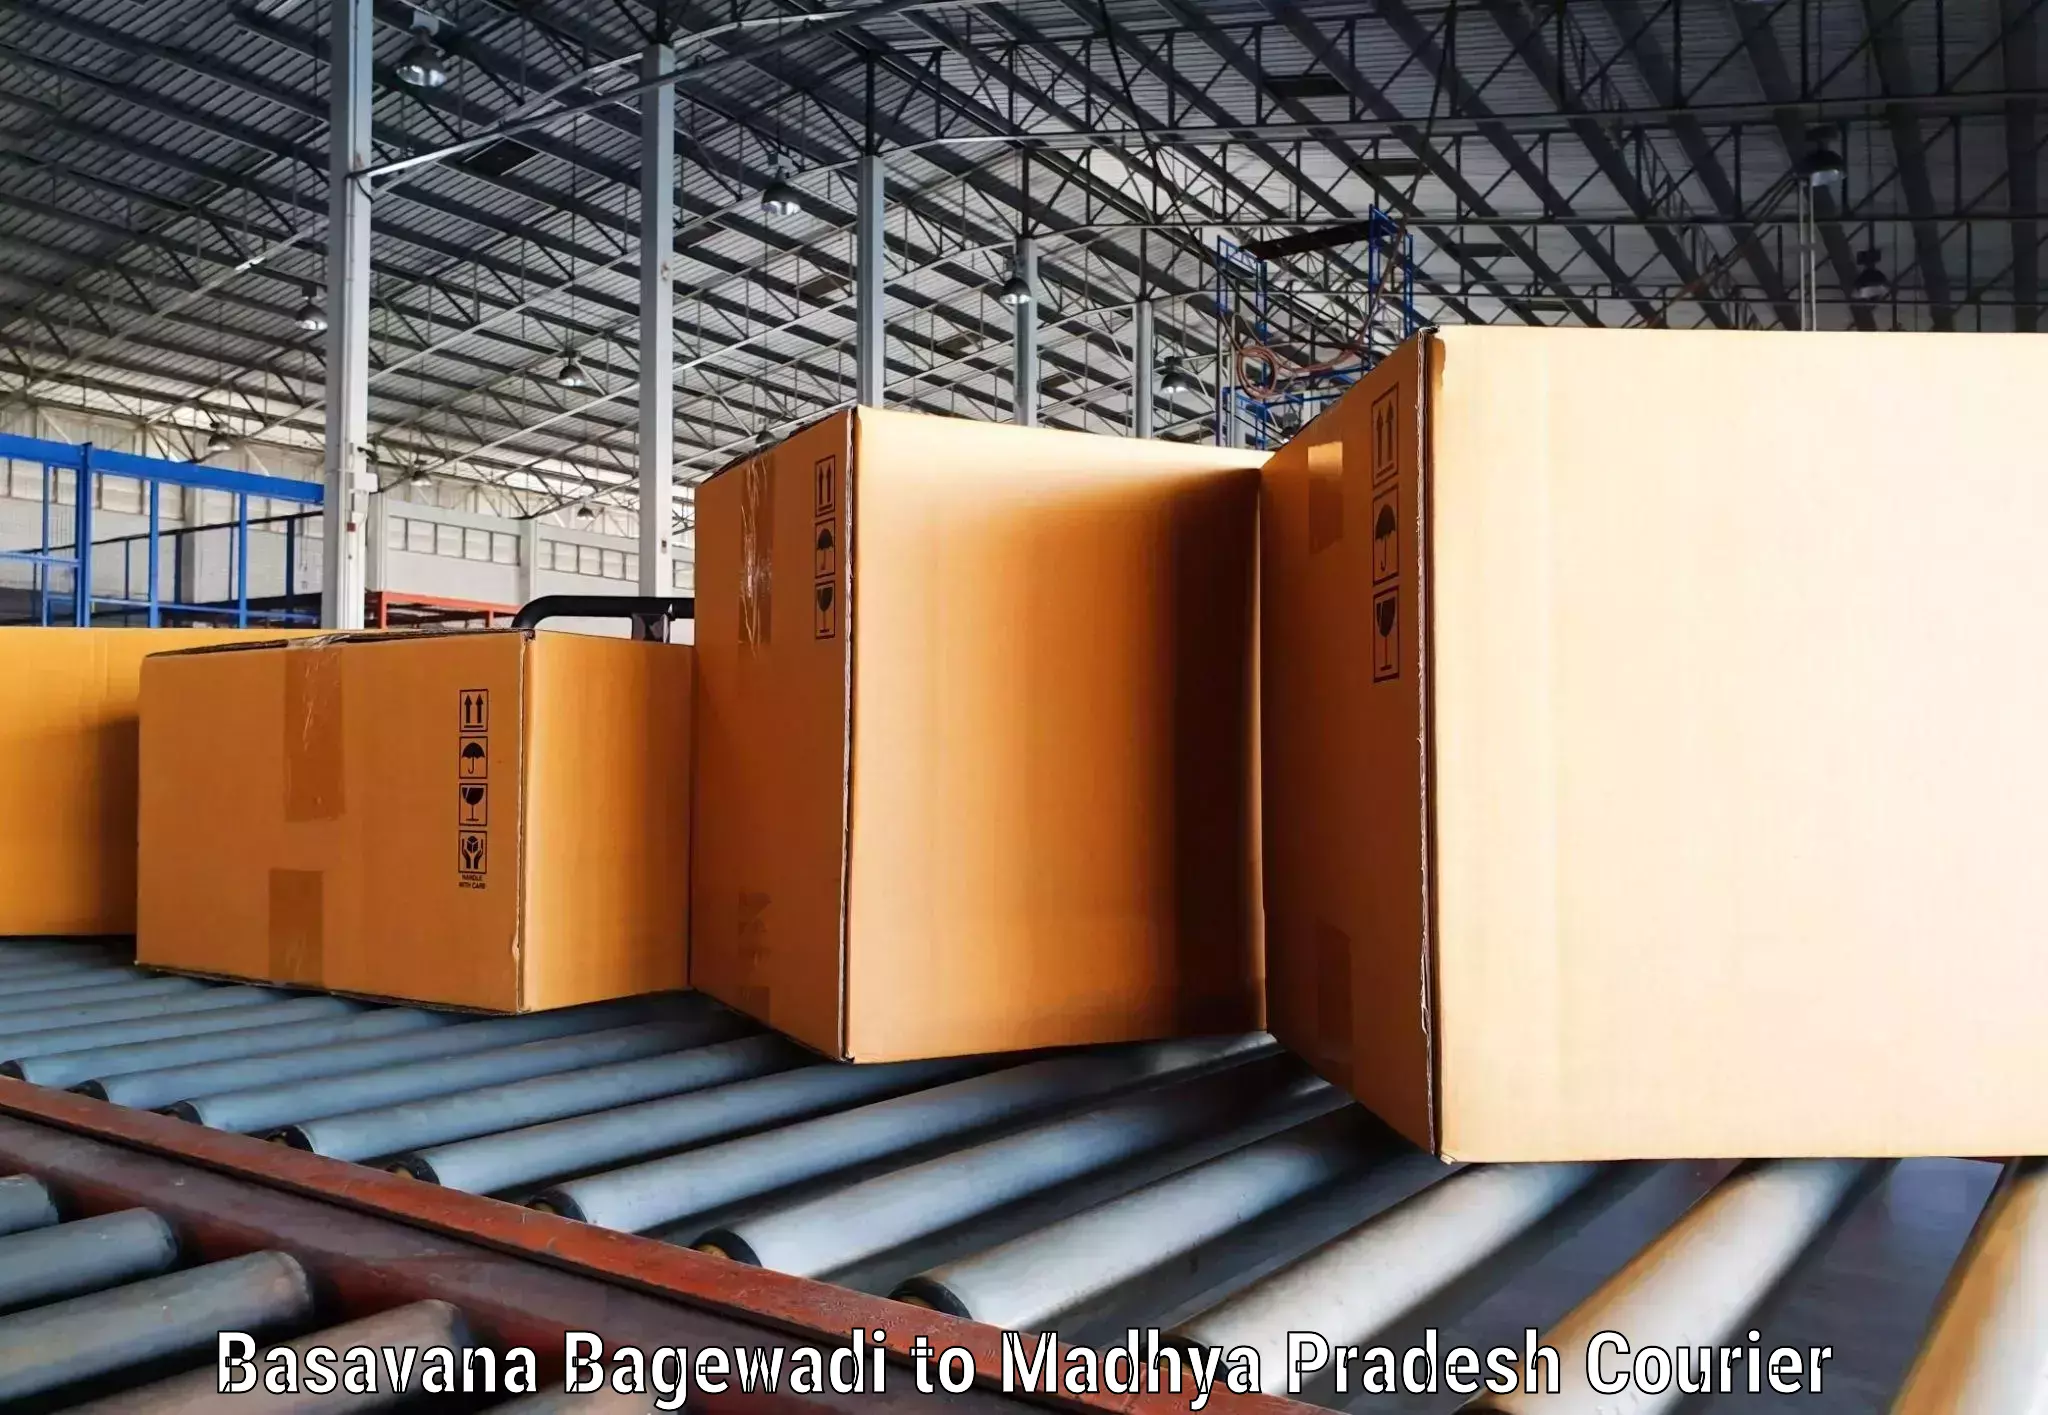 Global shipping networks Basavana Bagewadi to IIT Indore